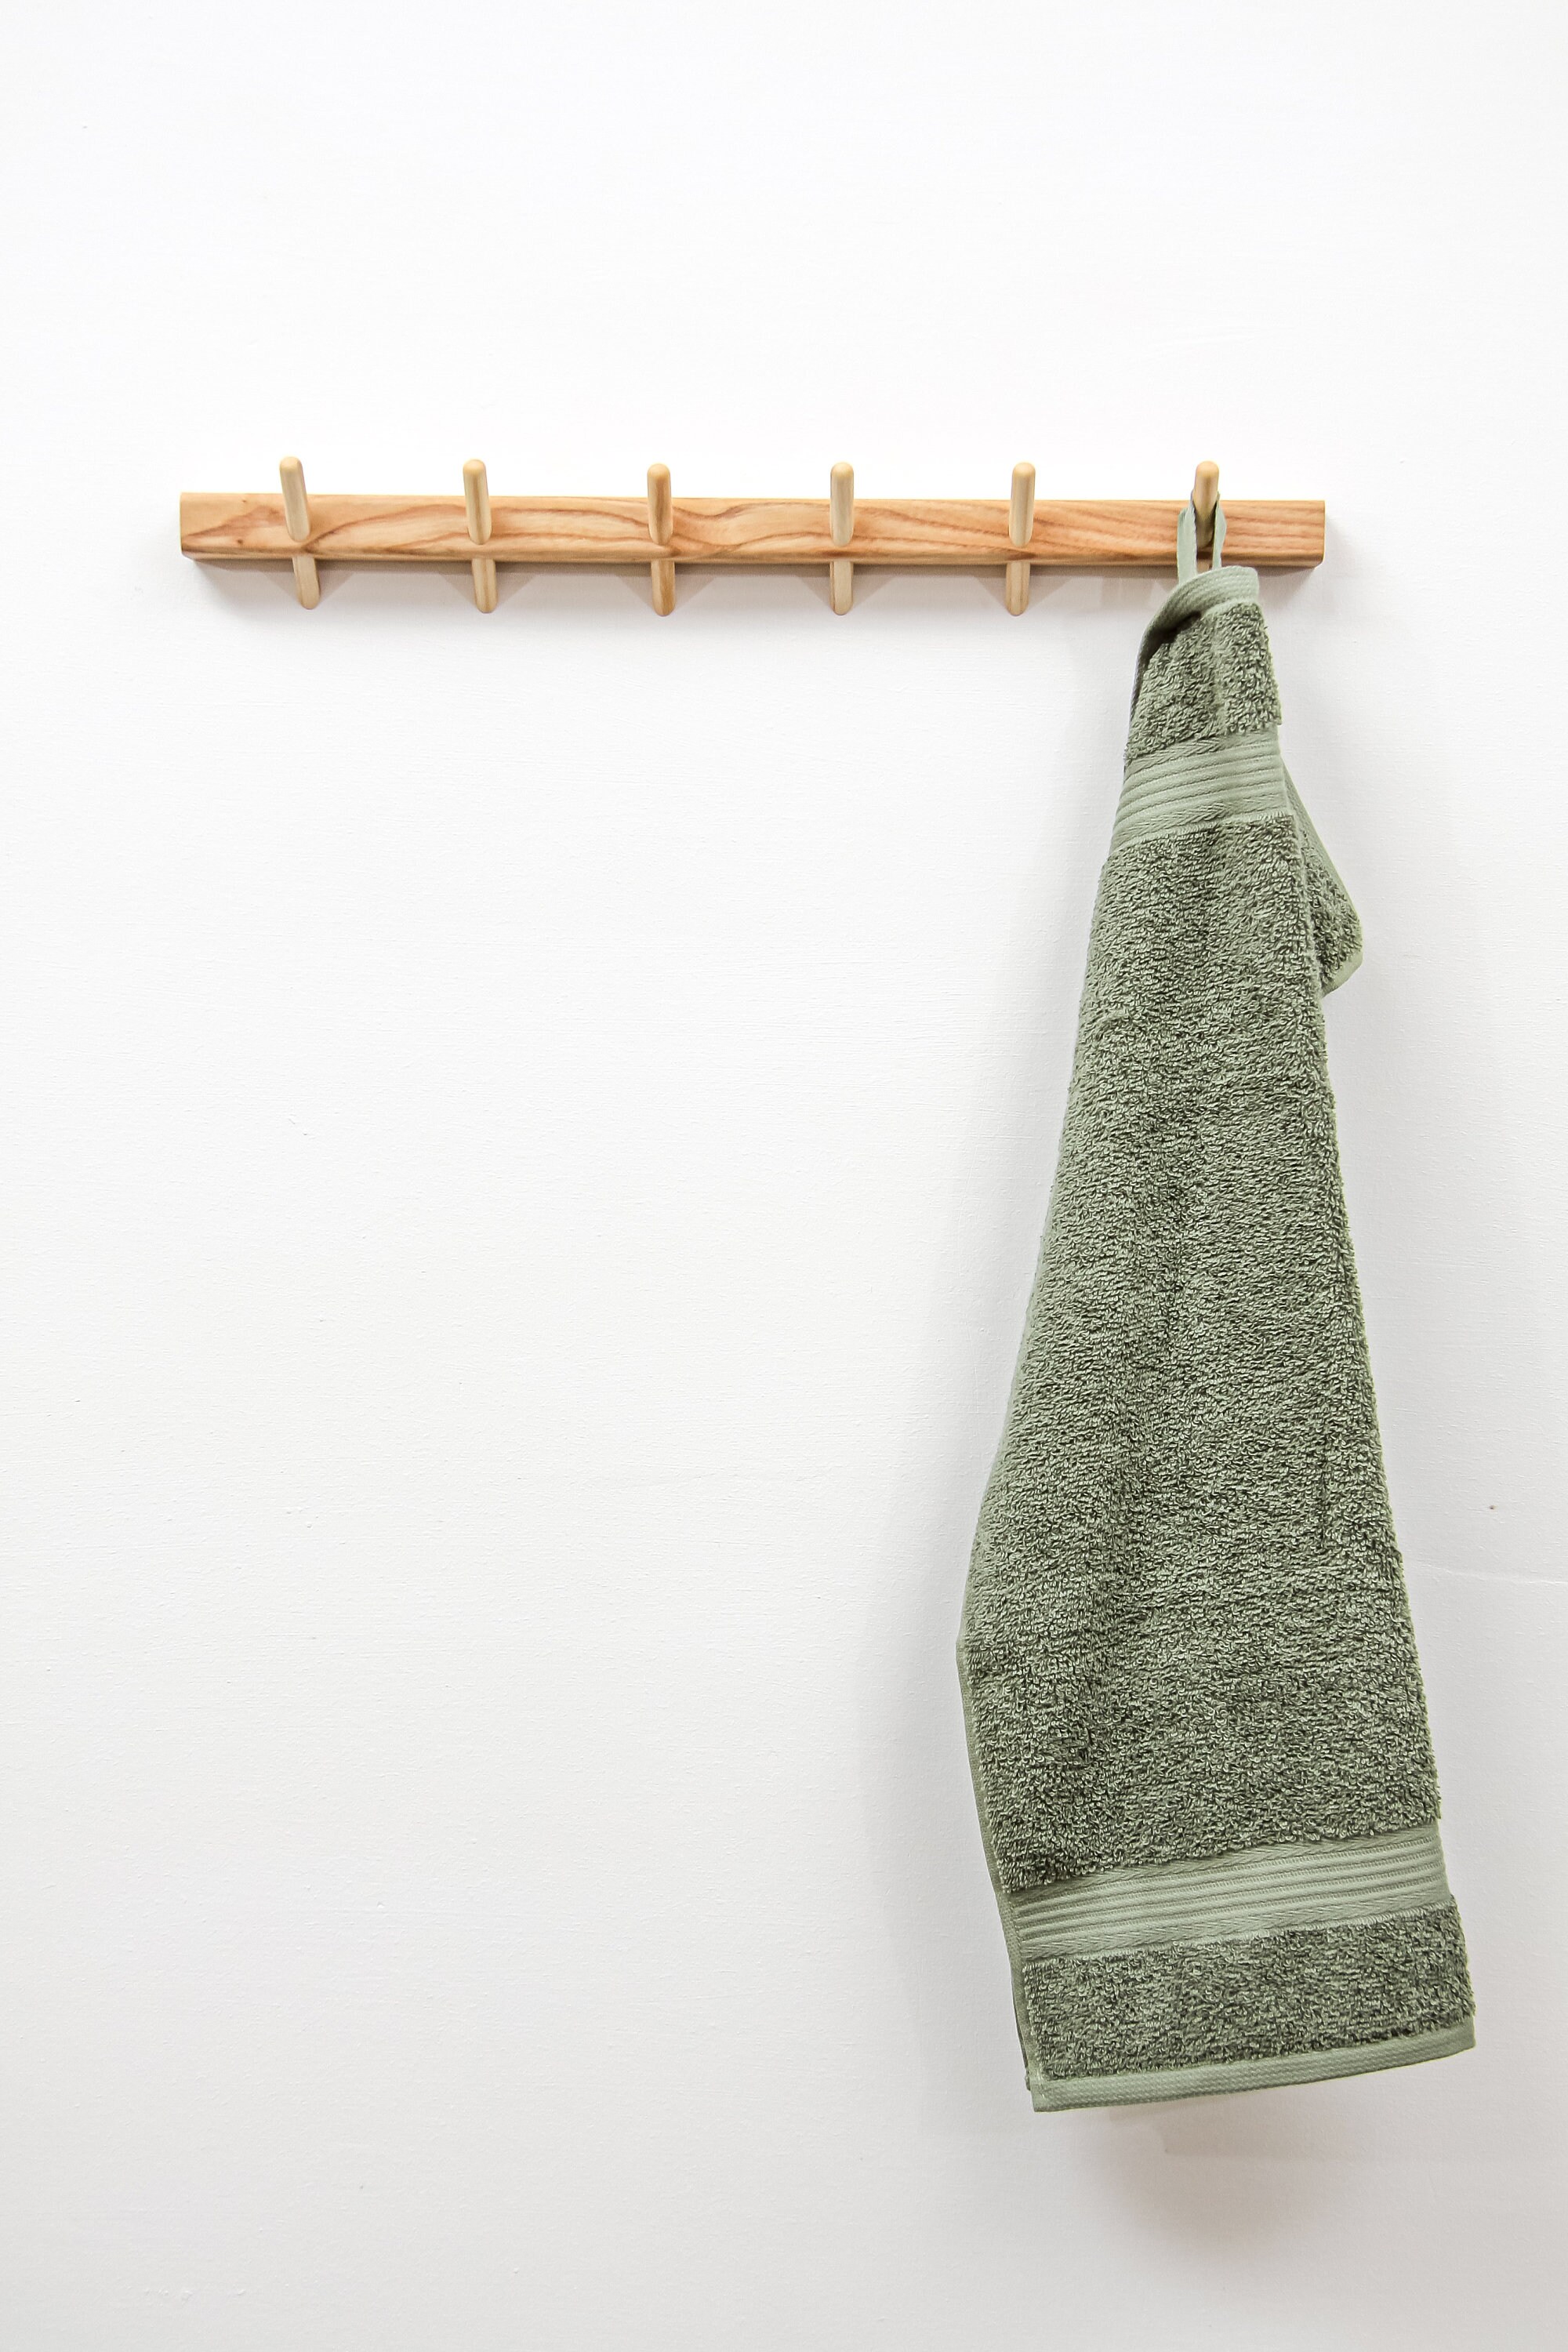 Ash Bathroom Towel Rack // Wooden Pegs Towel Hanger // | Etsy